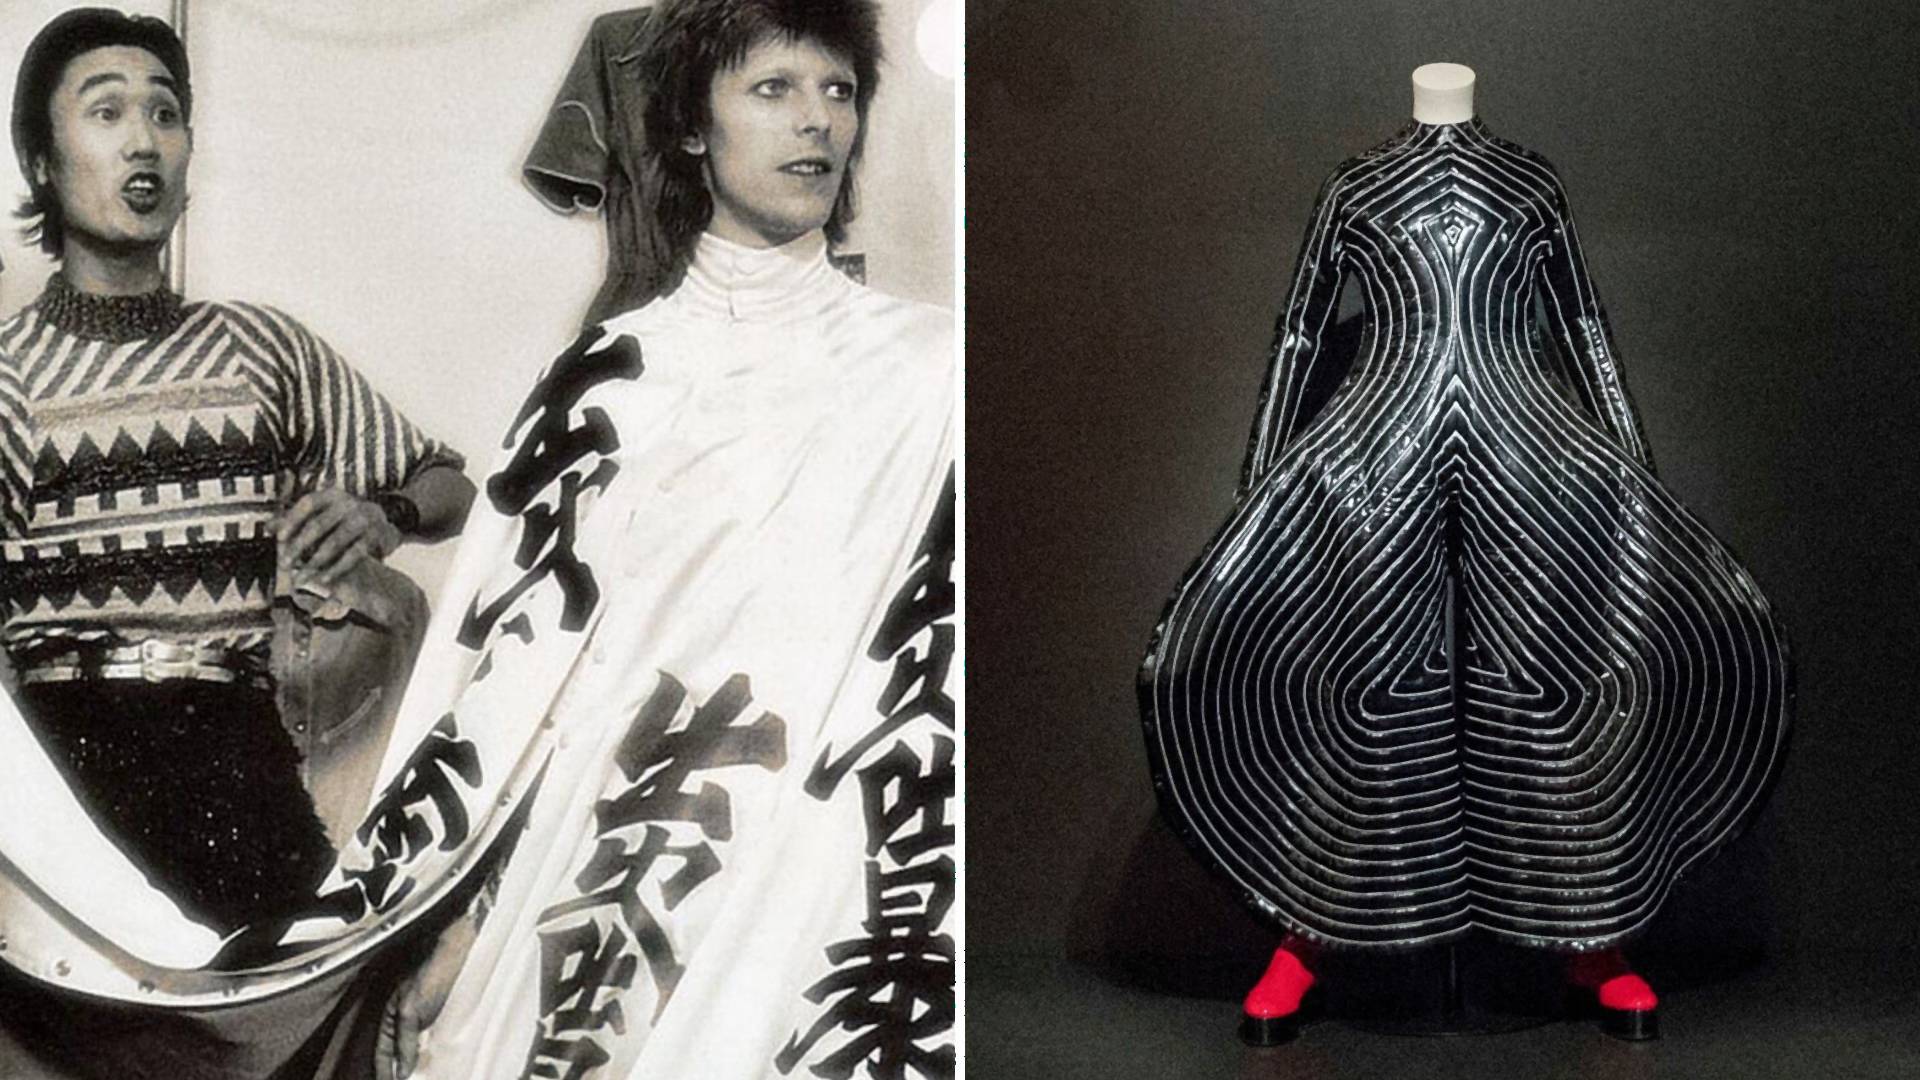 Zomrel známy japonský návrhár, slávnym sa stal aj vďaka kostýmom pre Davida Bowieho